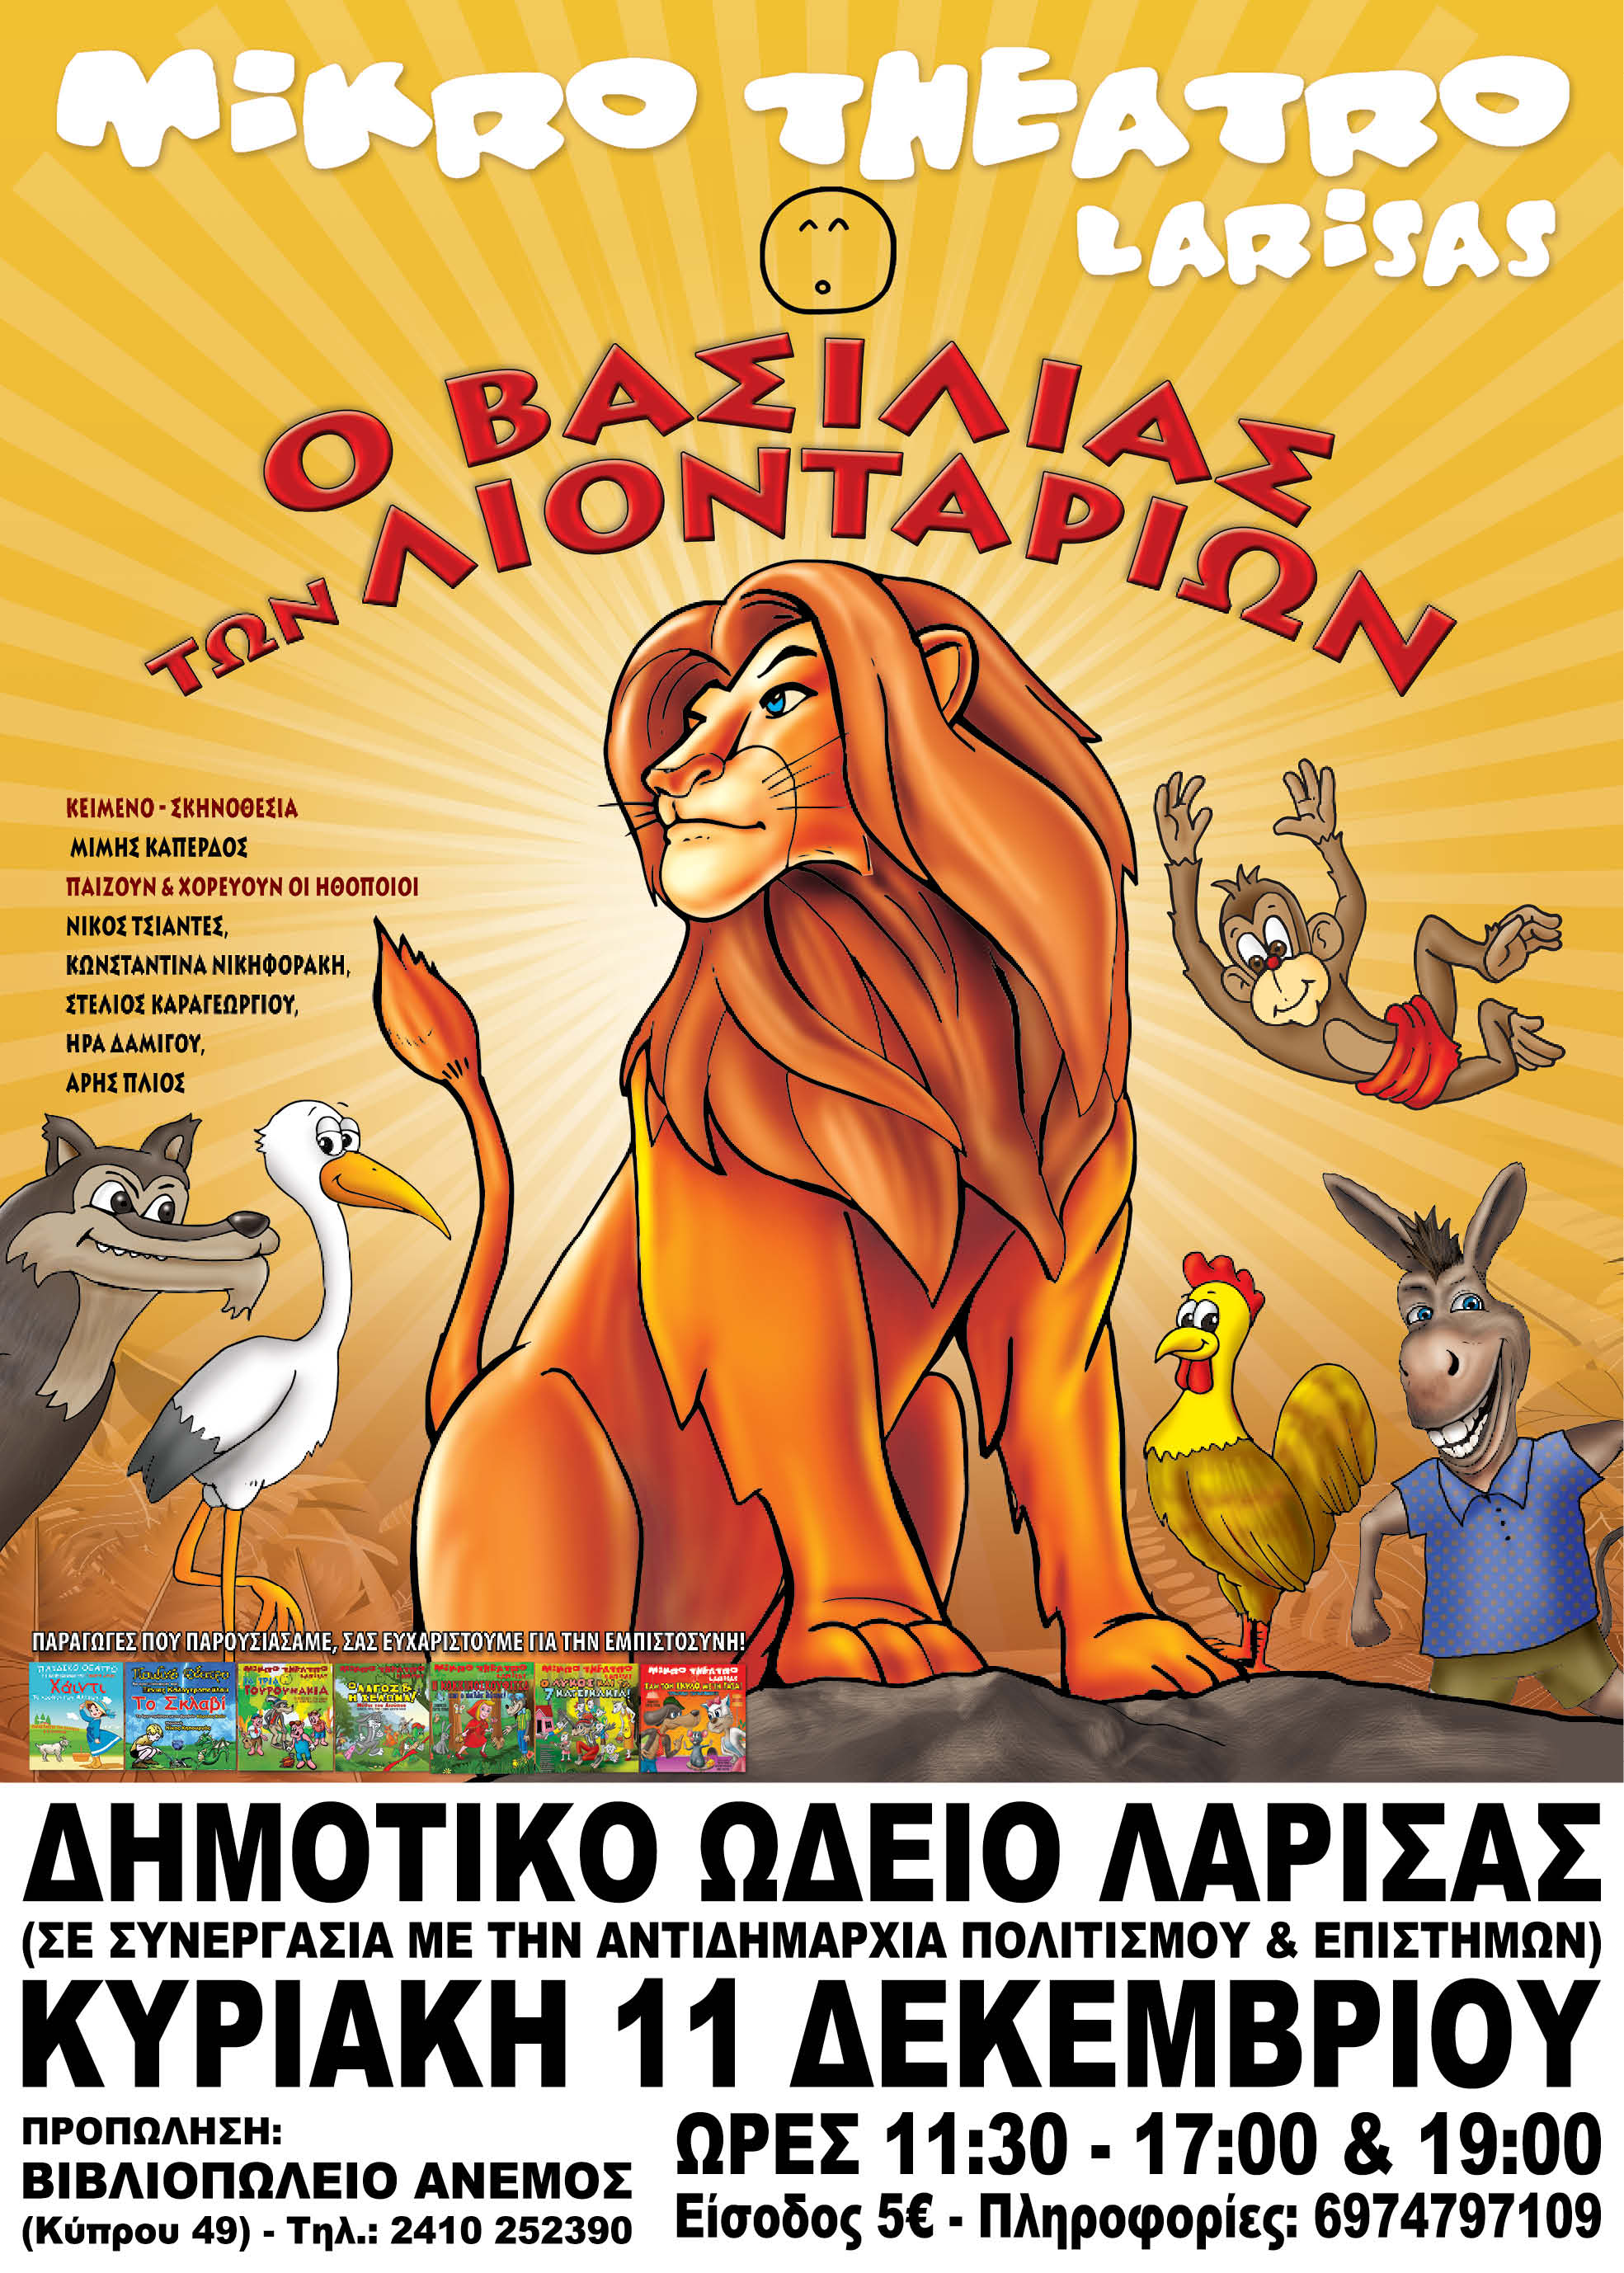 Ο "Βασιλιάς των Λιονταριών" στο ΔΩΛ μόνο για τρεις παραστάσεις